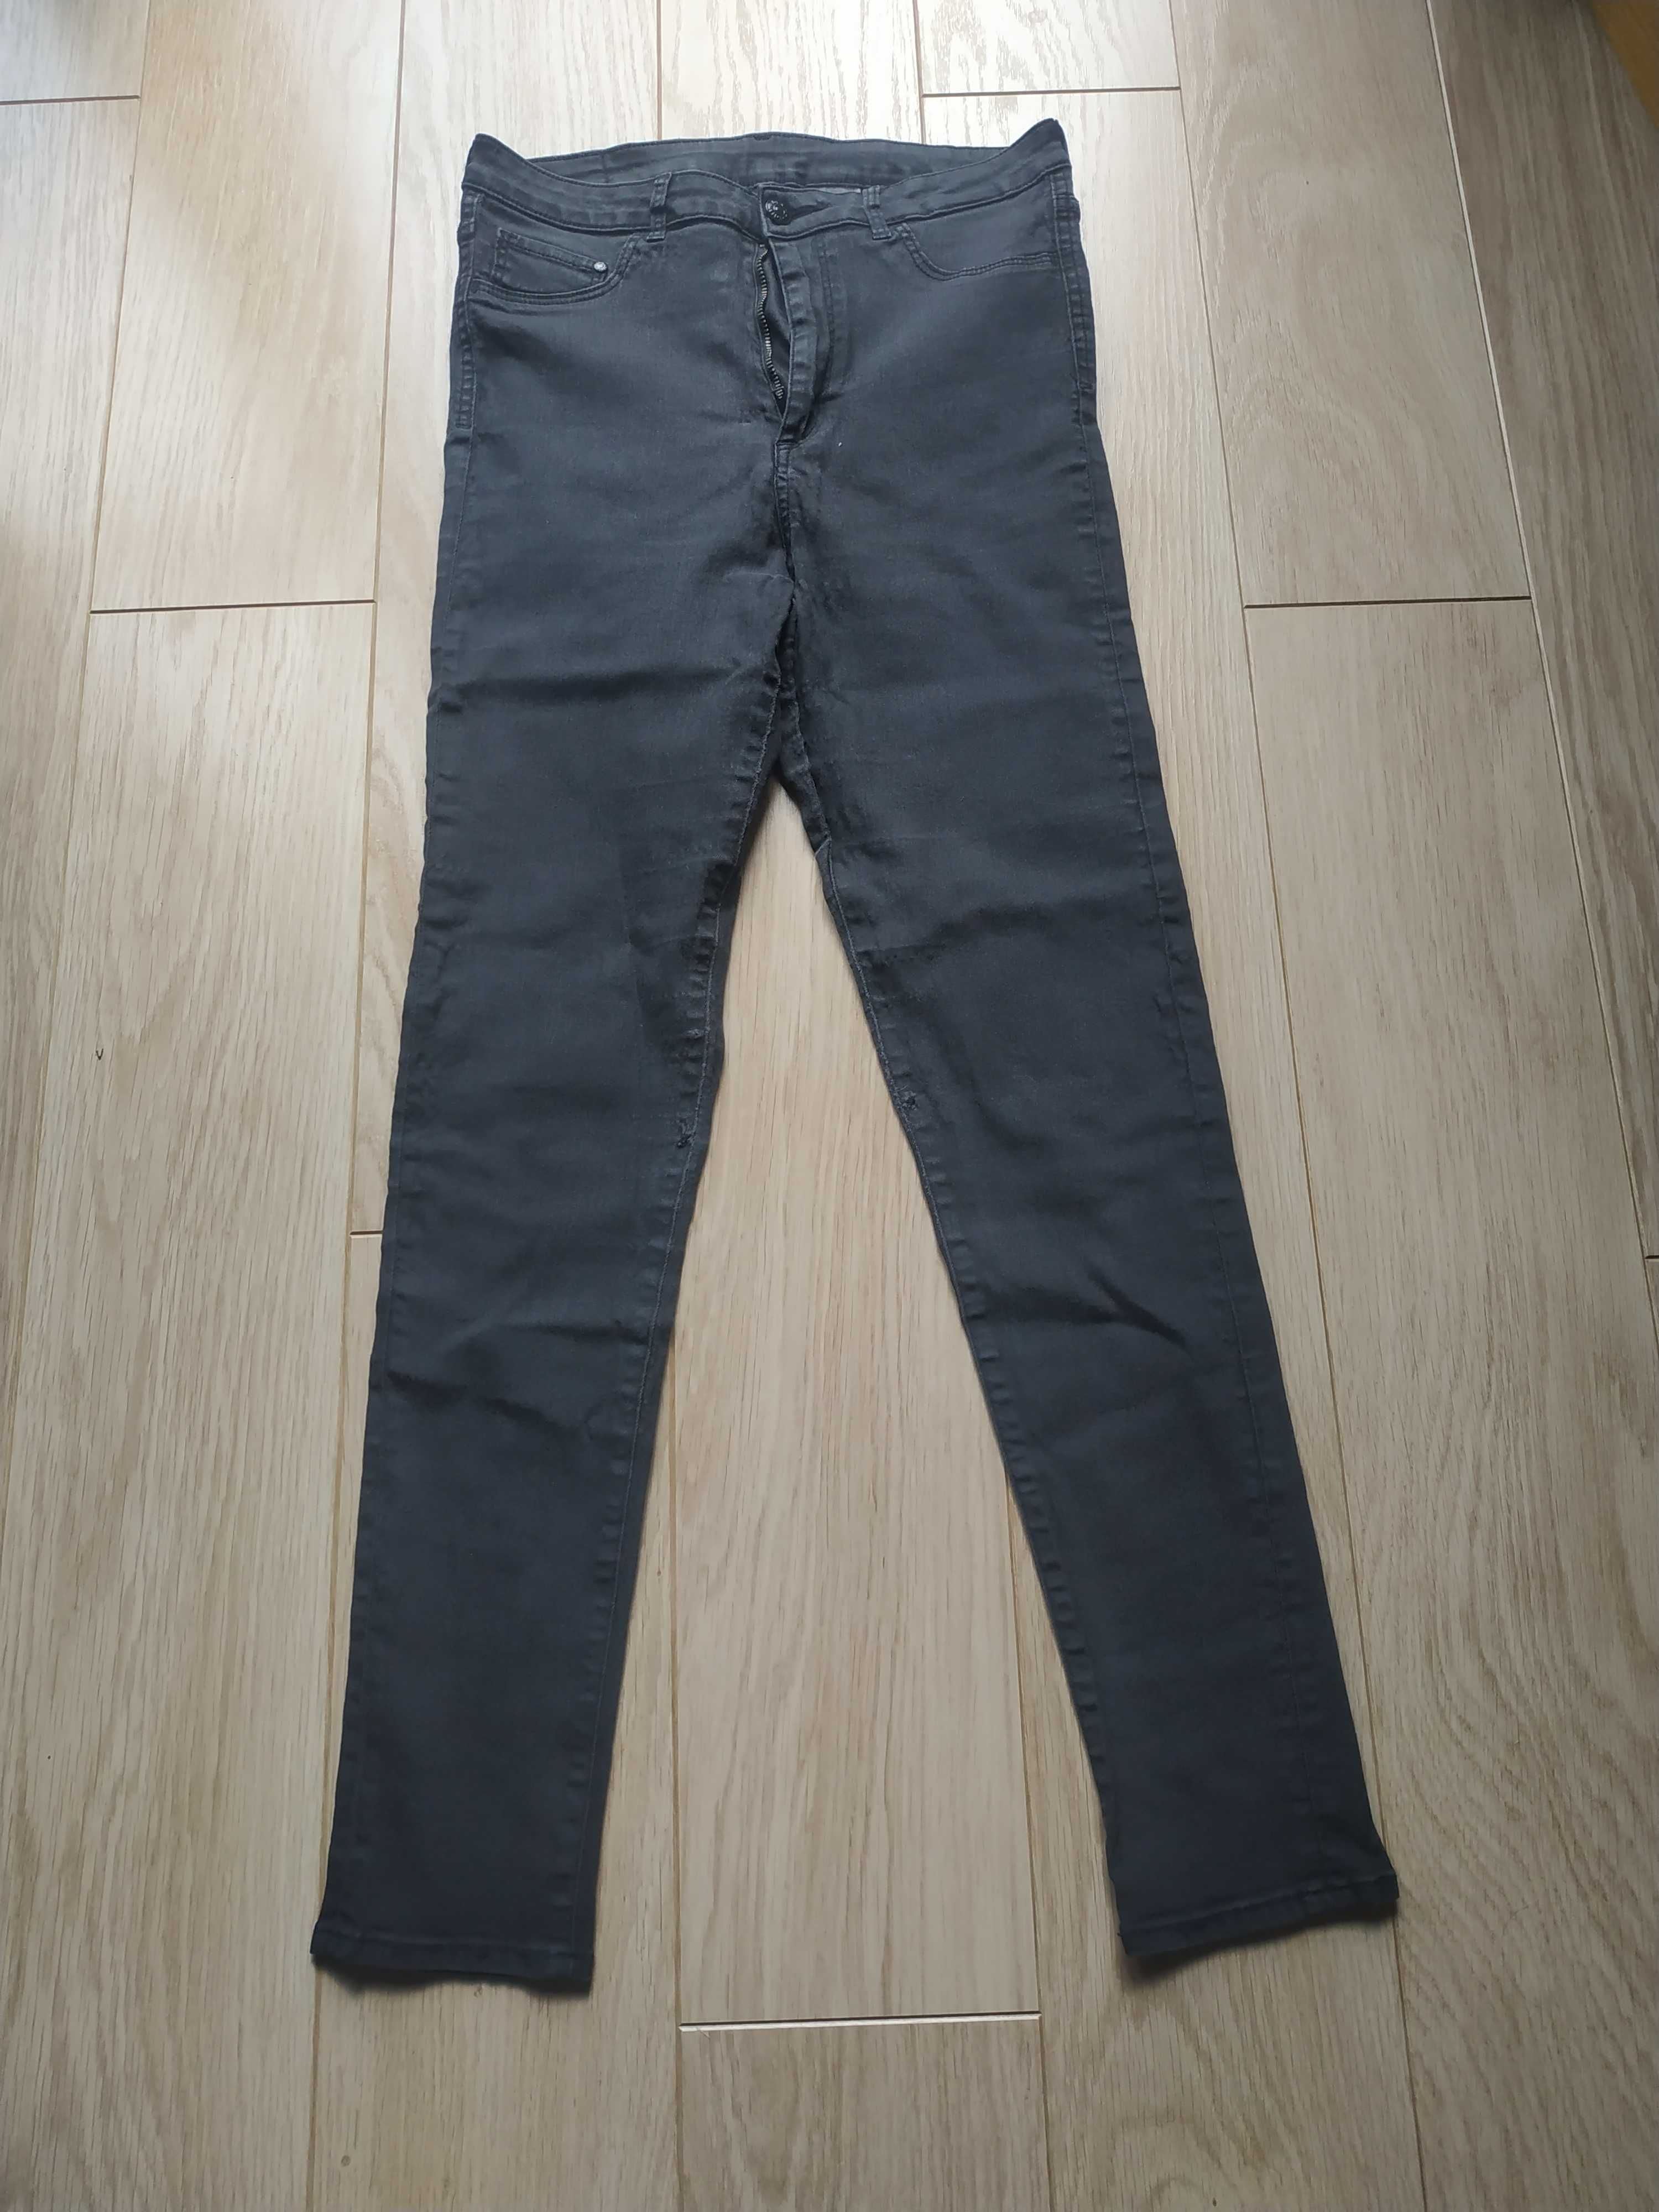 Spodnie jeans dla chłopca H&M Denim roz 170/76A - pięknie się nosi :)